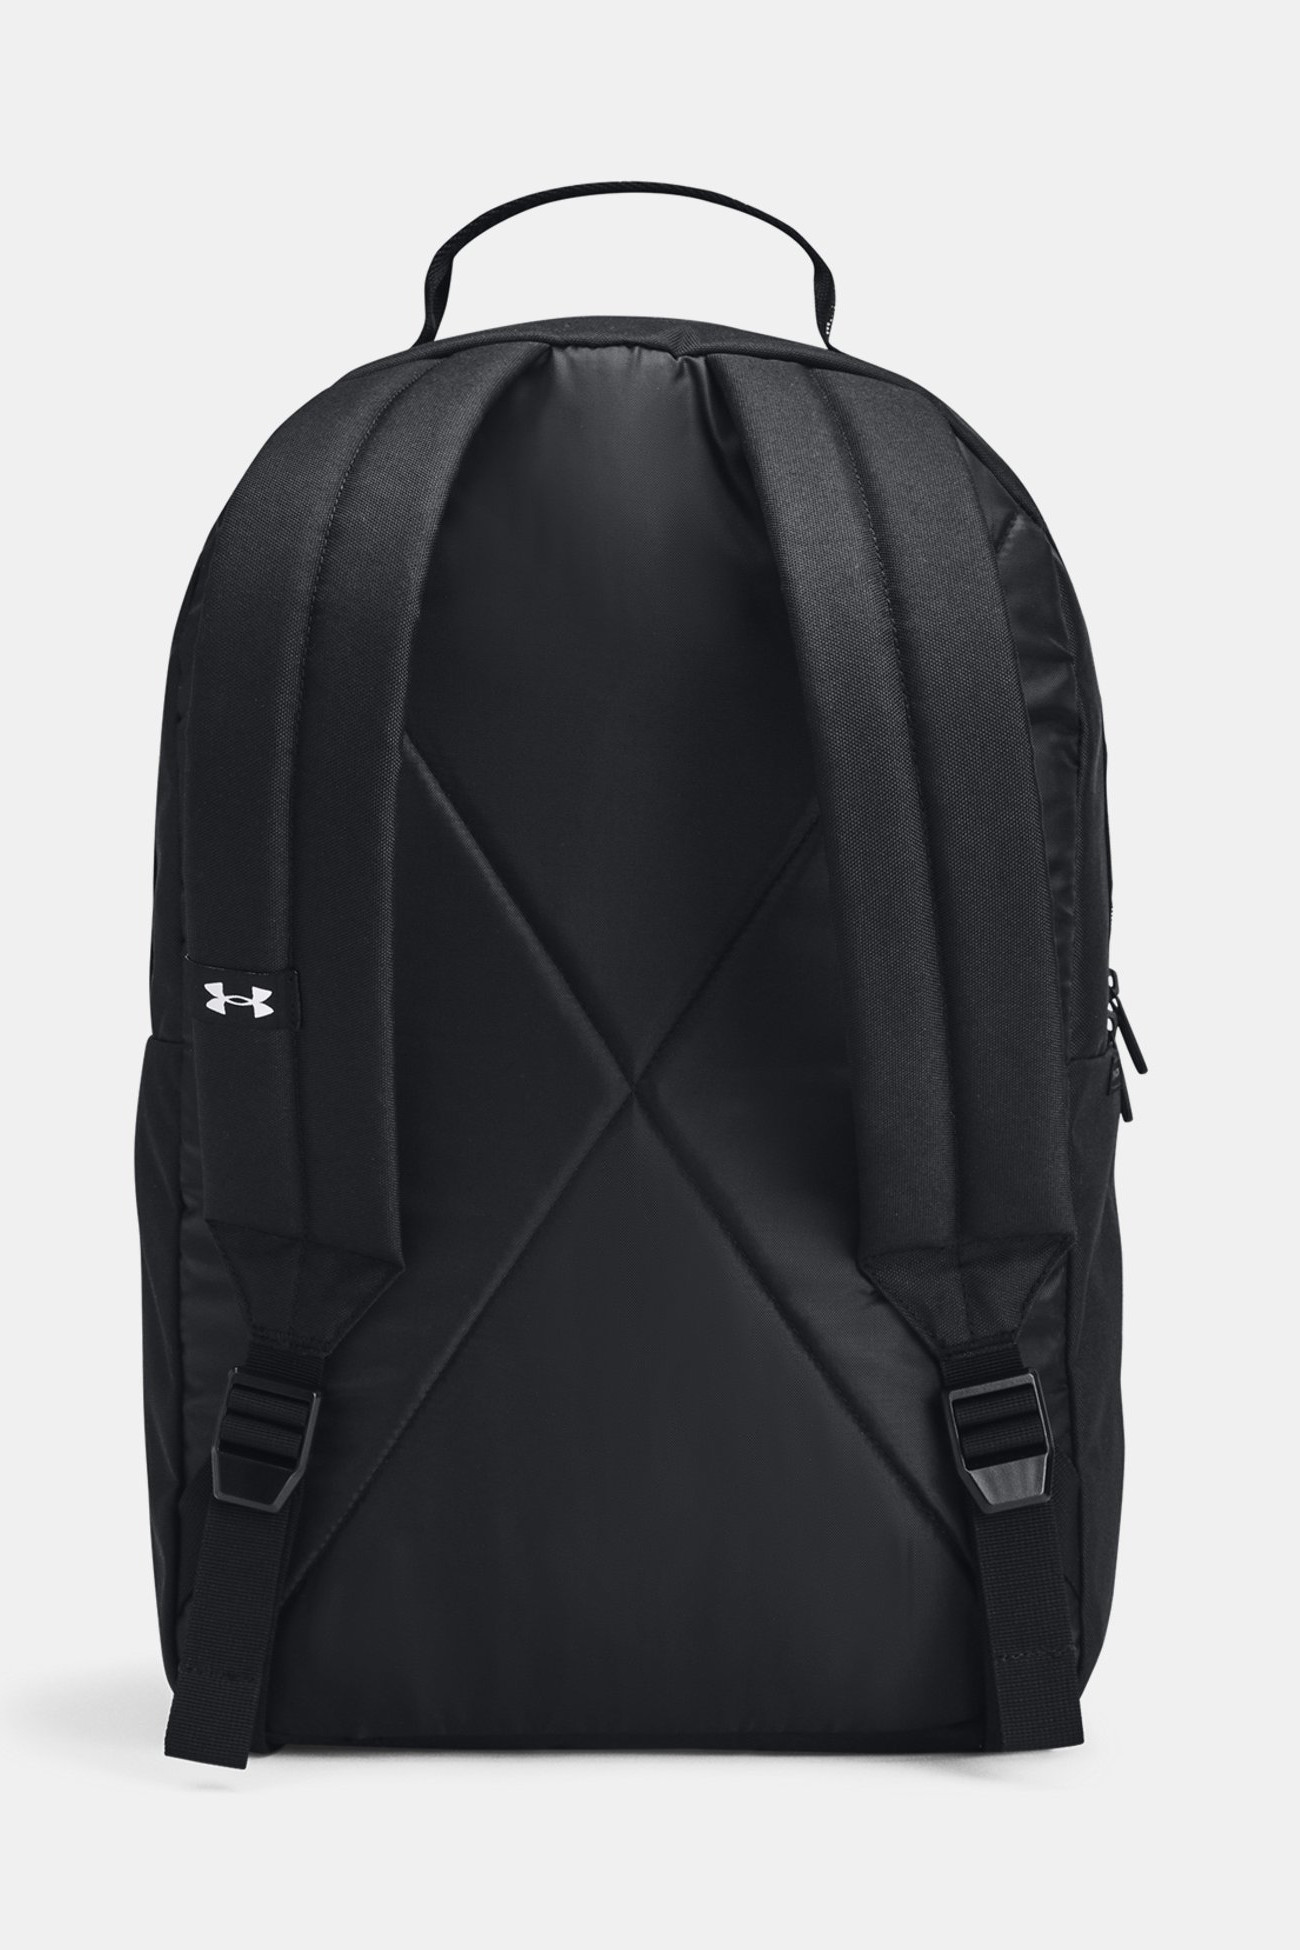 Рюкзак  Under Armour UA Loudon Backpack черный 1378415-001 изображение 3